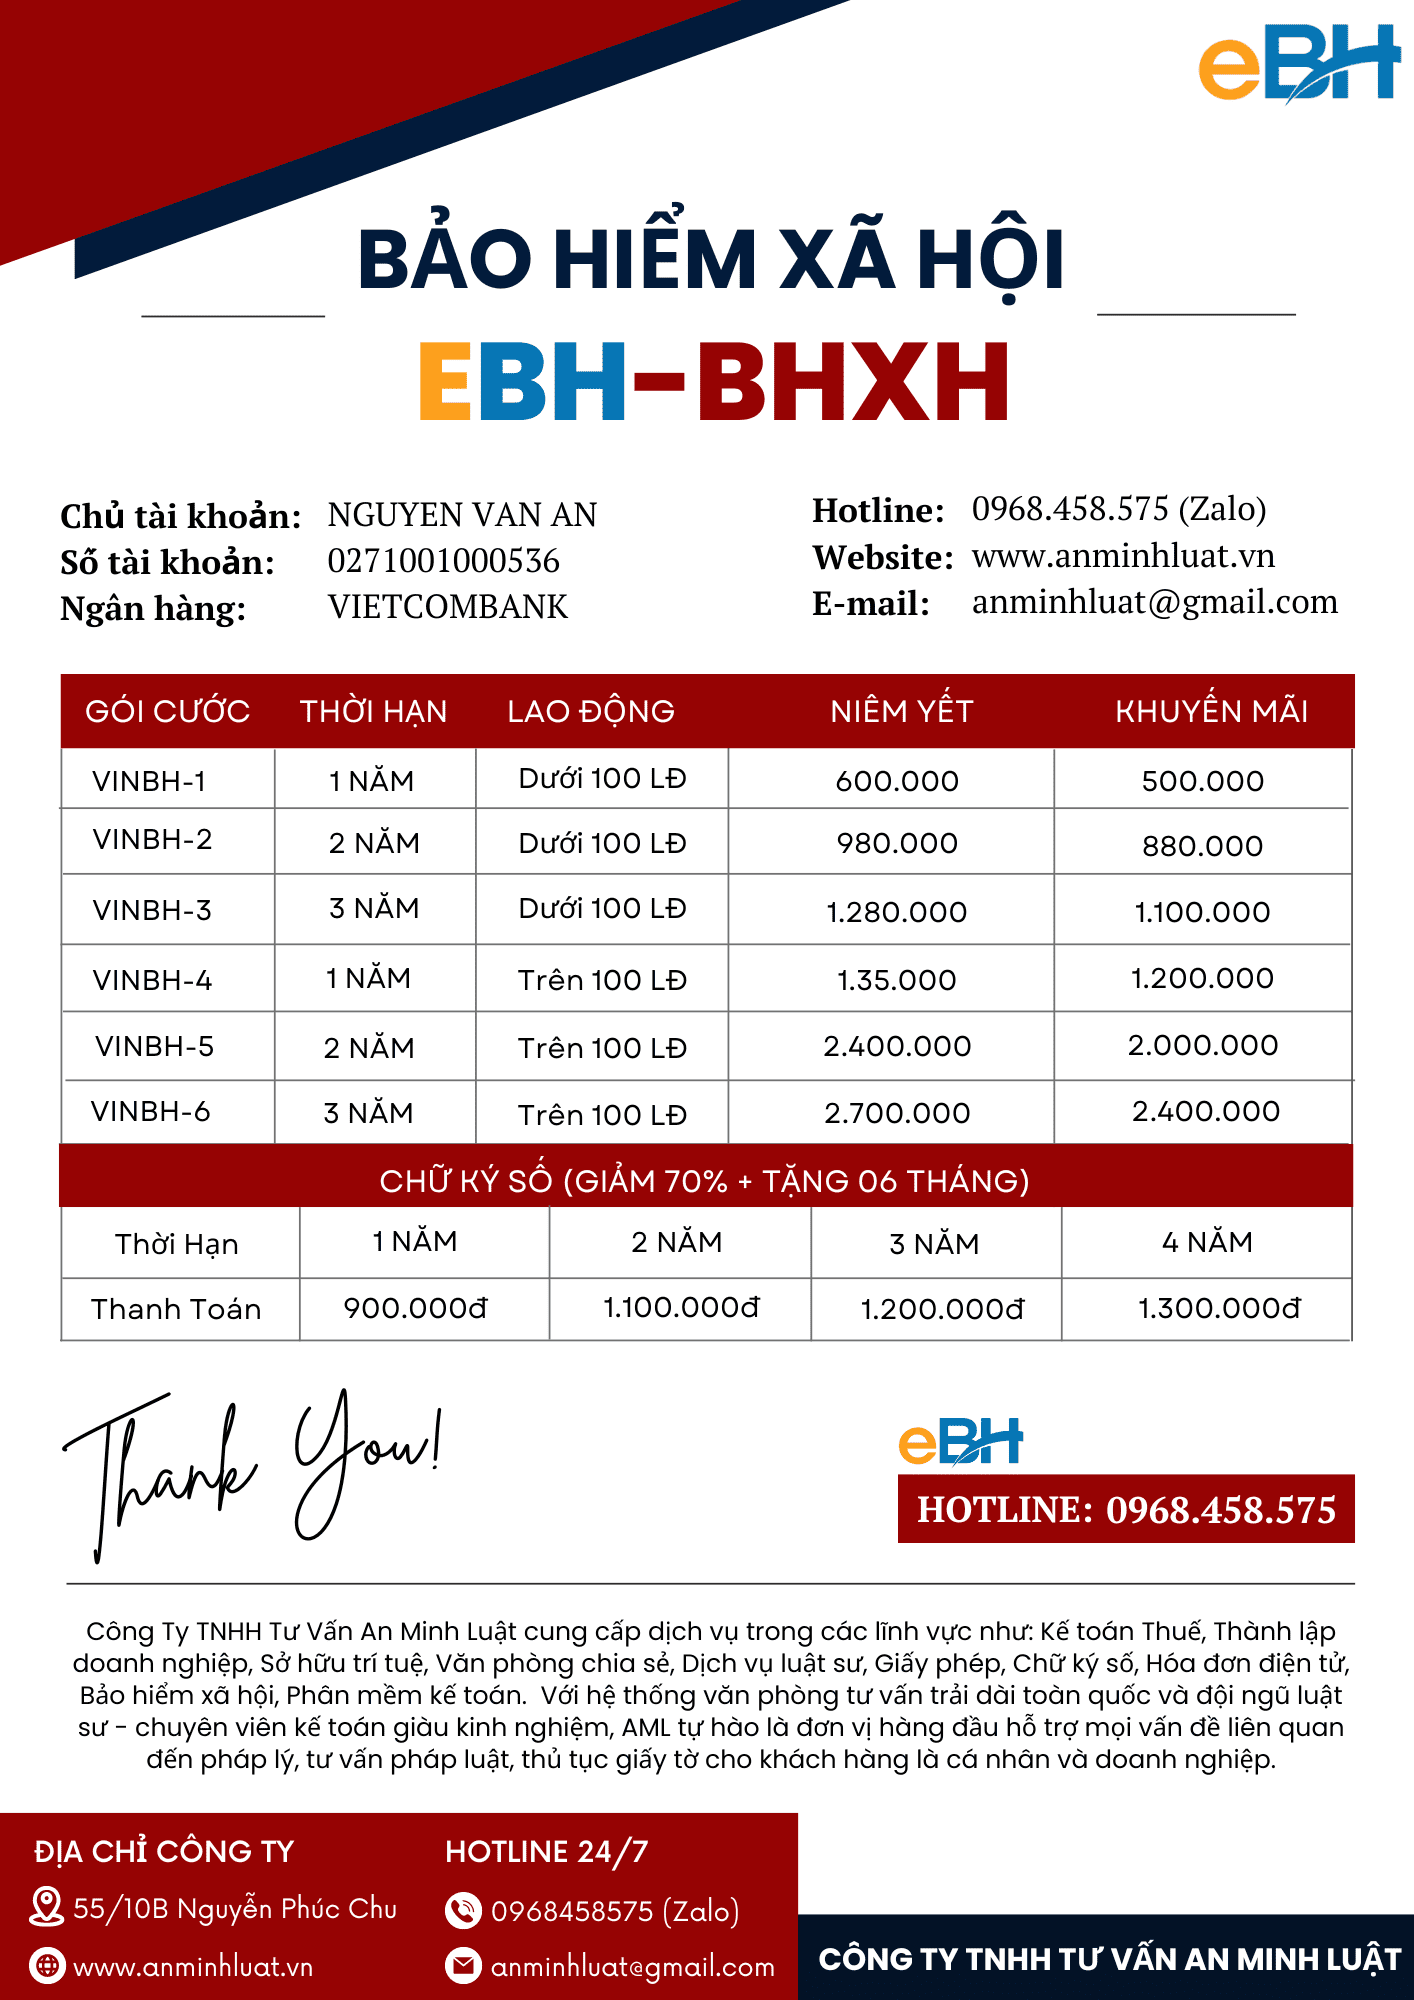 Phần mềm kê khai BHXH Thái Sơn (eBH)